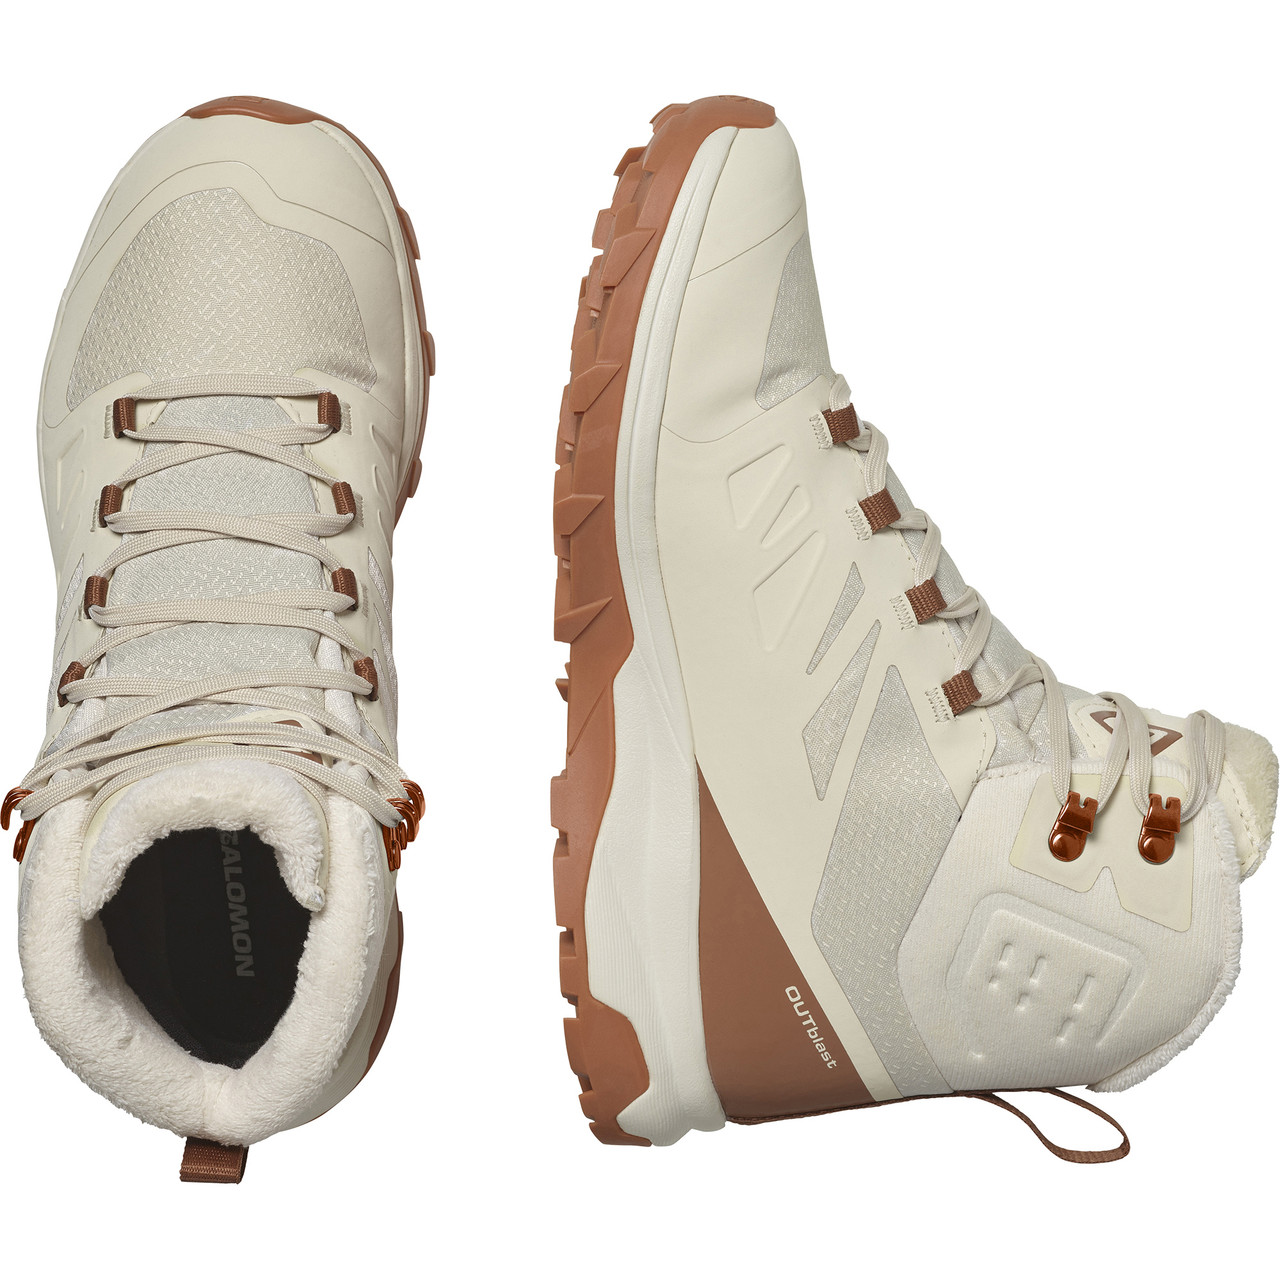 Salomon Outblast TS Waterproof Winter Boots - Women's | MEC